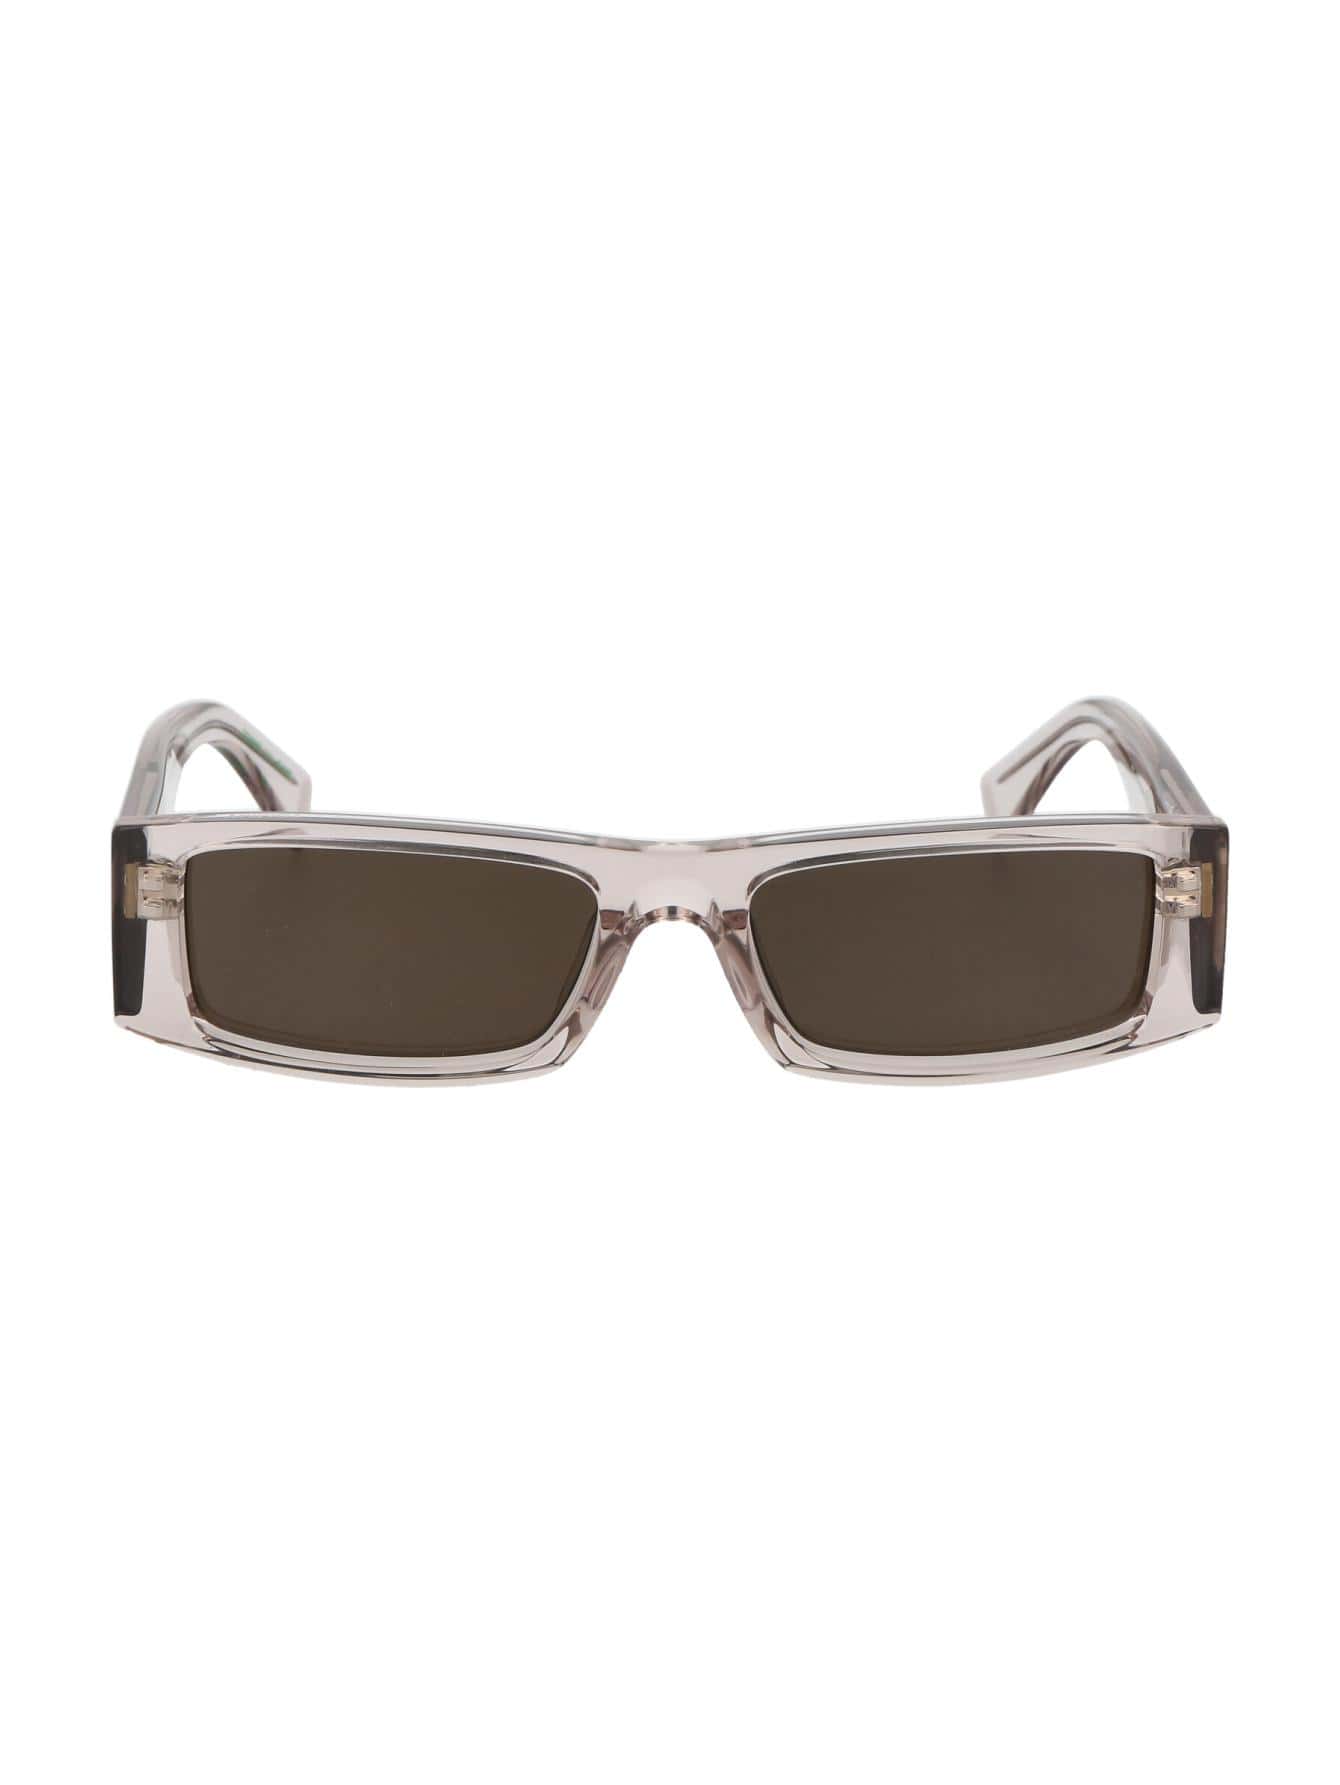 Мужские солнцезащитные очки Tommy Hilfiger DECOR TJ0092S10A70, многоцветный солнцезащитные очки tommy hilfiger синий черный